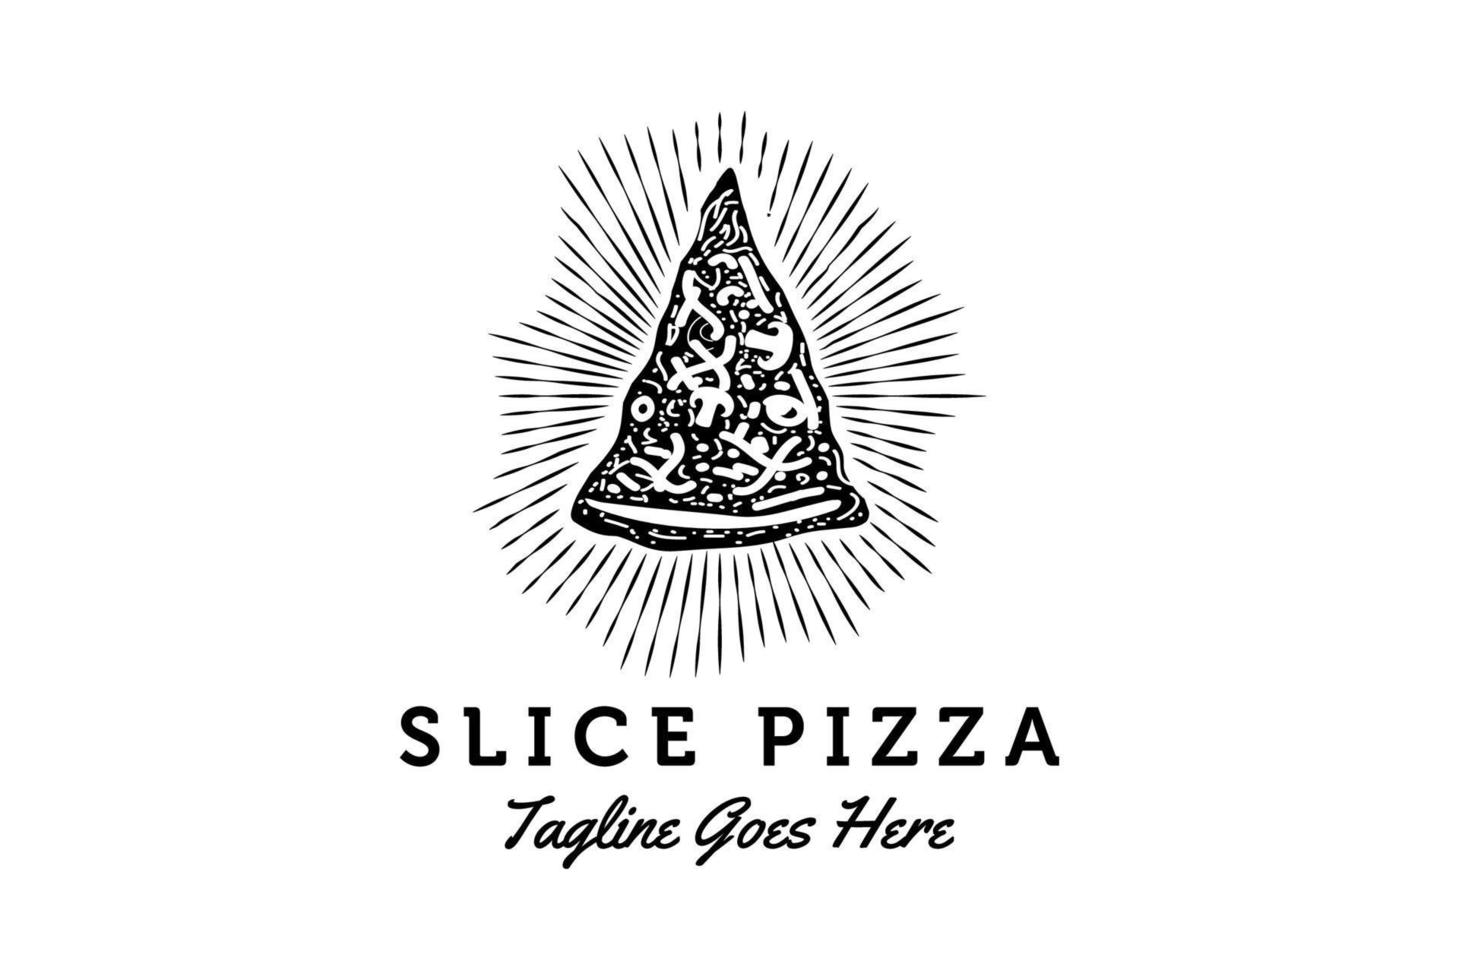 rustik retro årgång pizza skiva för pizzeria restaurang bar bistro logotyp design vektor